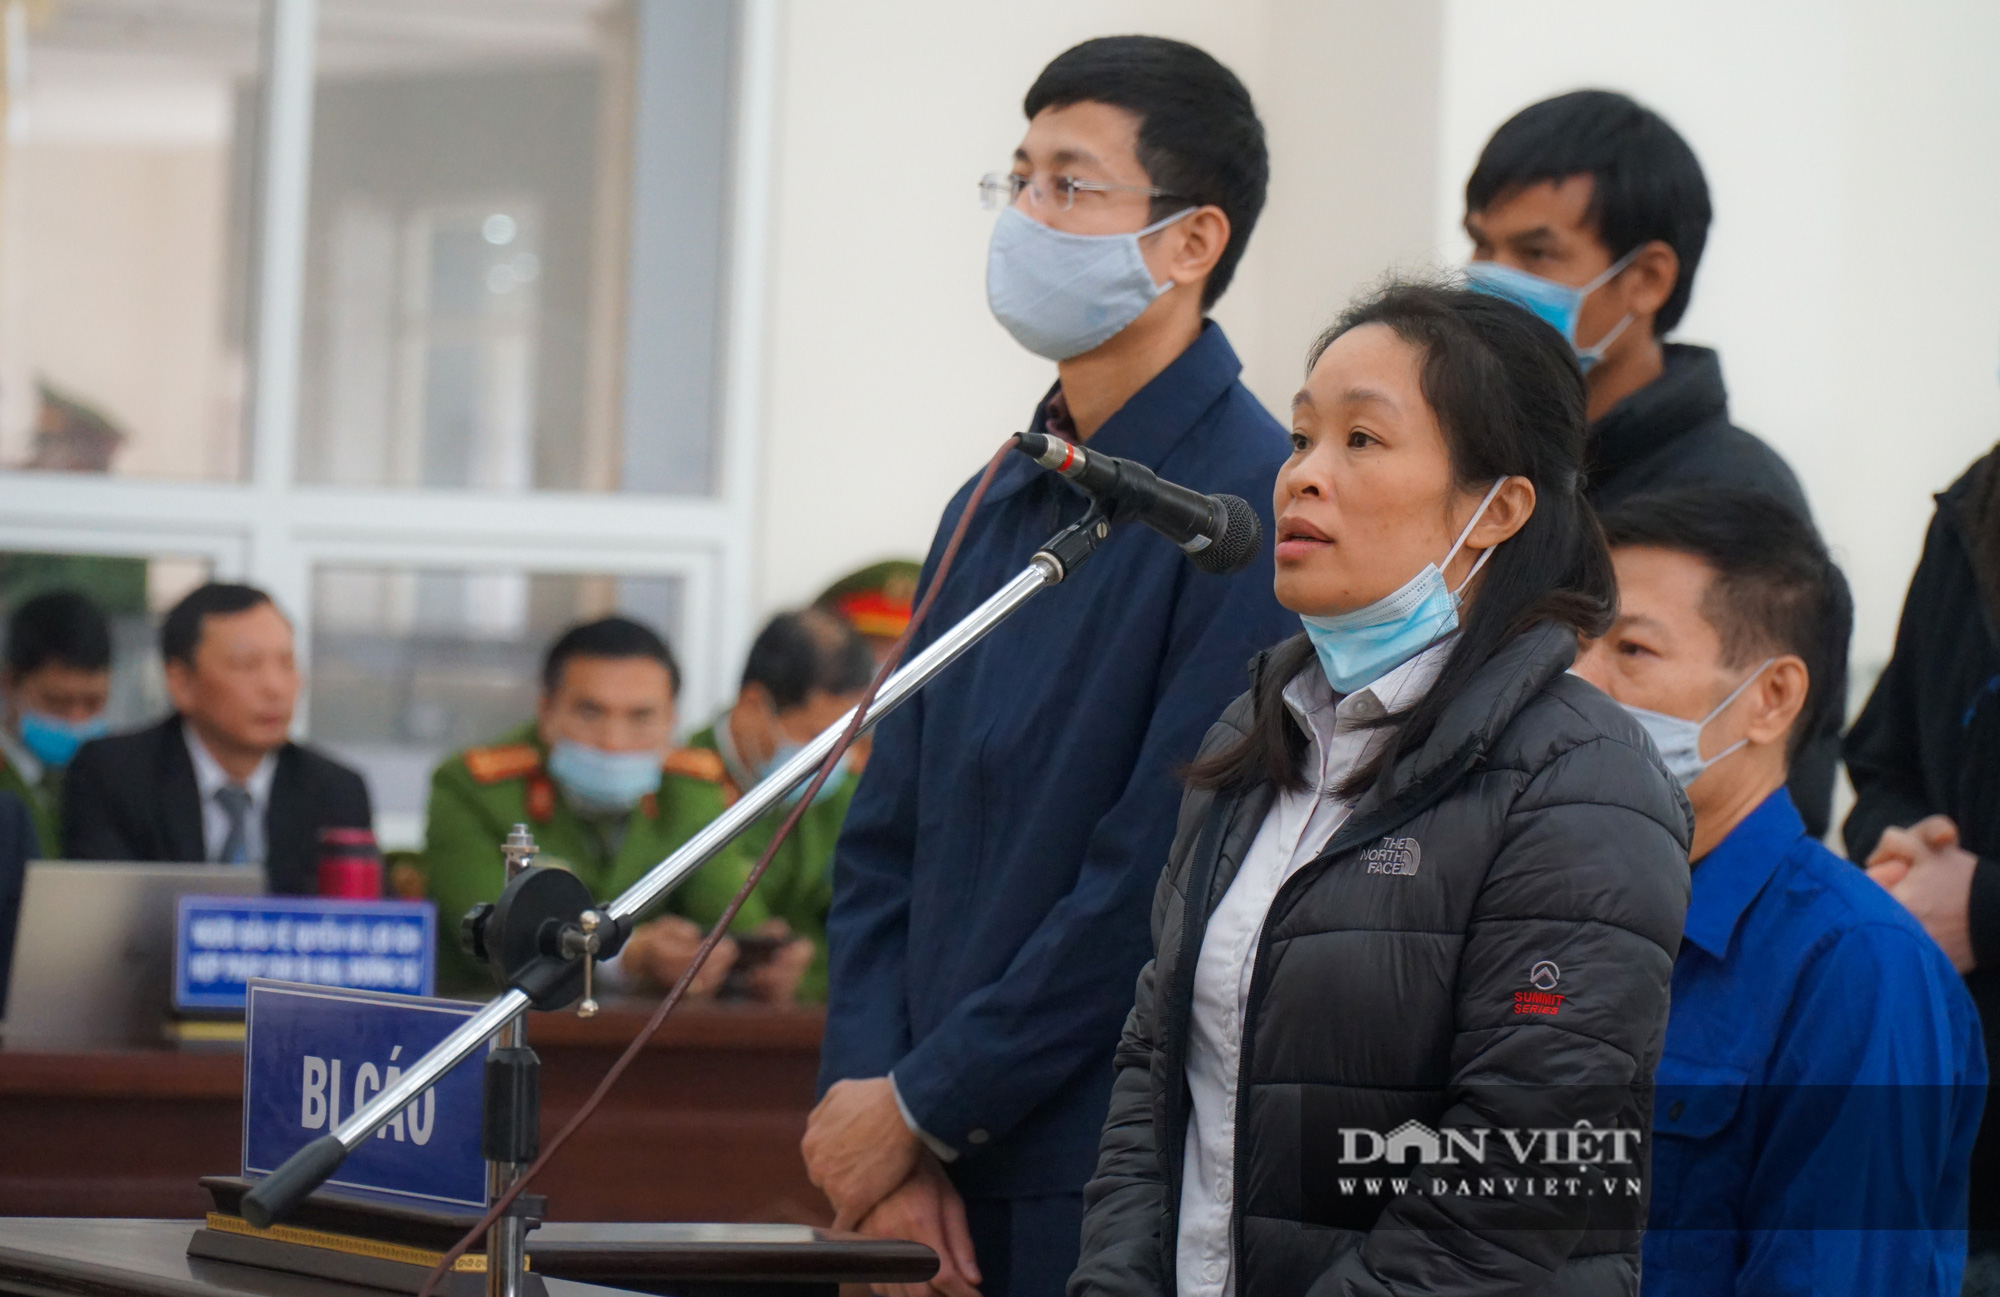 Toàn cảnh phiên toà xét xử Nguyễn Nhật Cảm cùng 9 đồng phạm  - Ảnh 3.